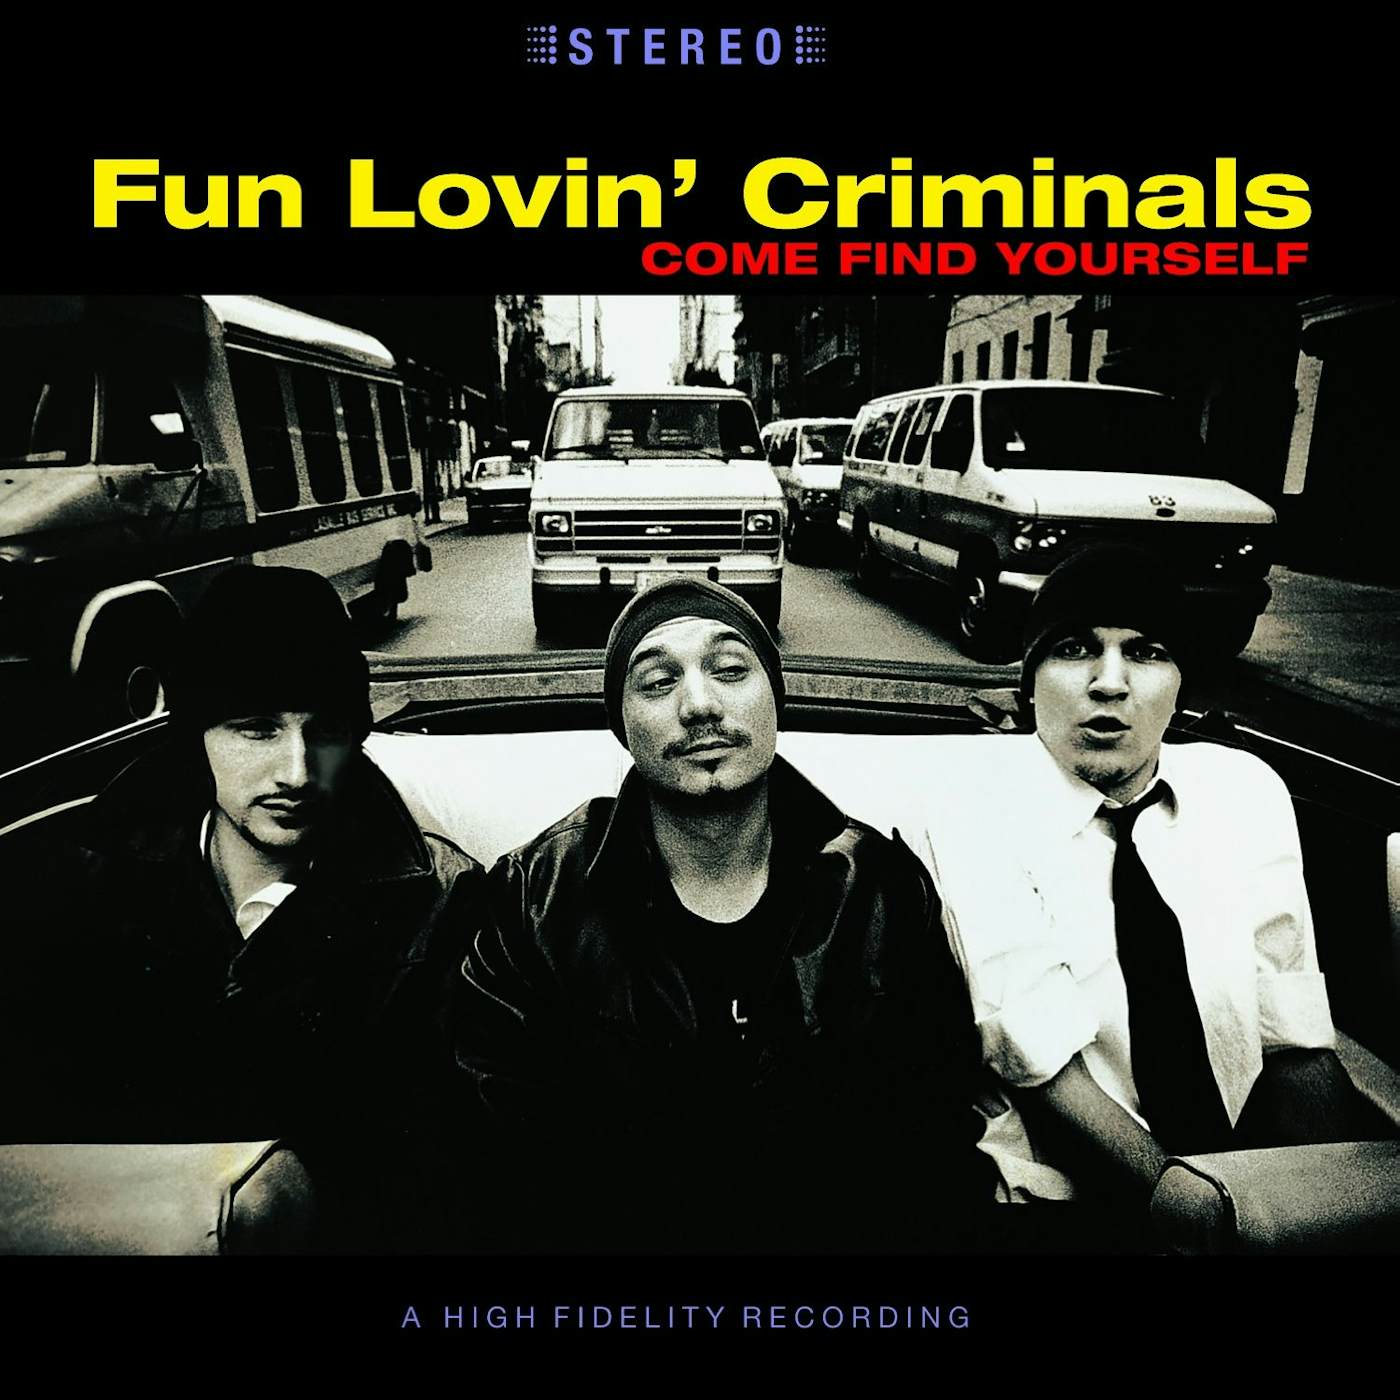 Fun Lovin' Criminals Come Find Yourself Vinyl Record